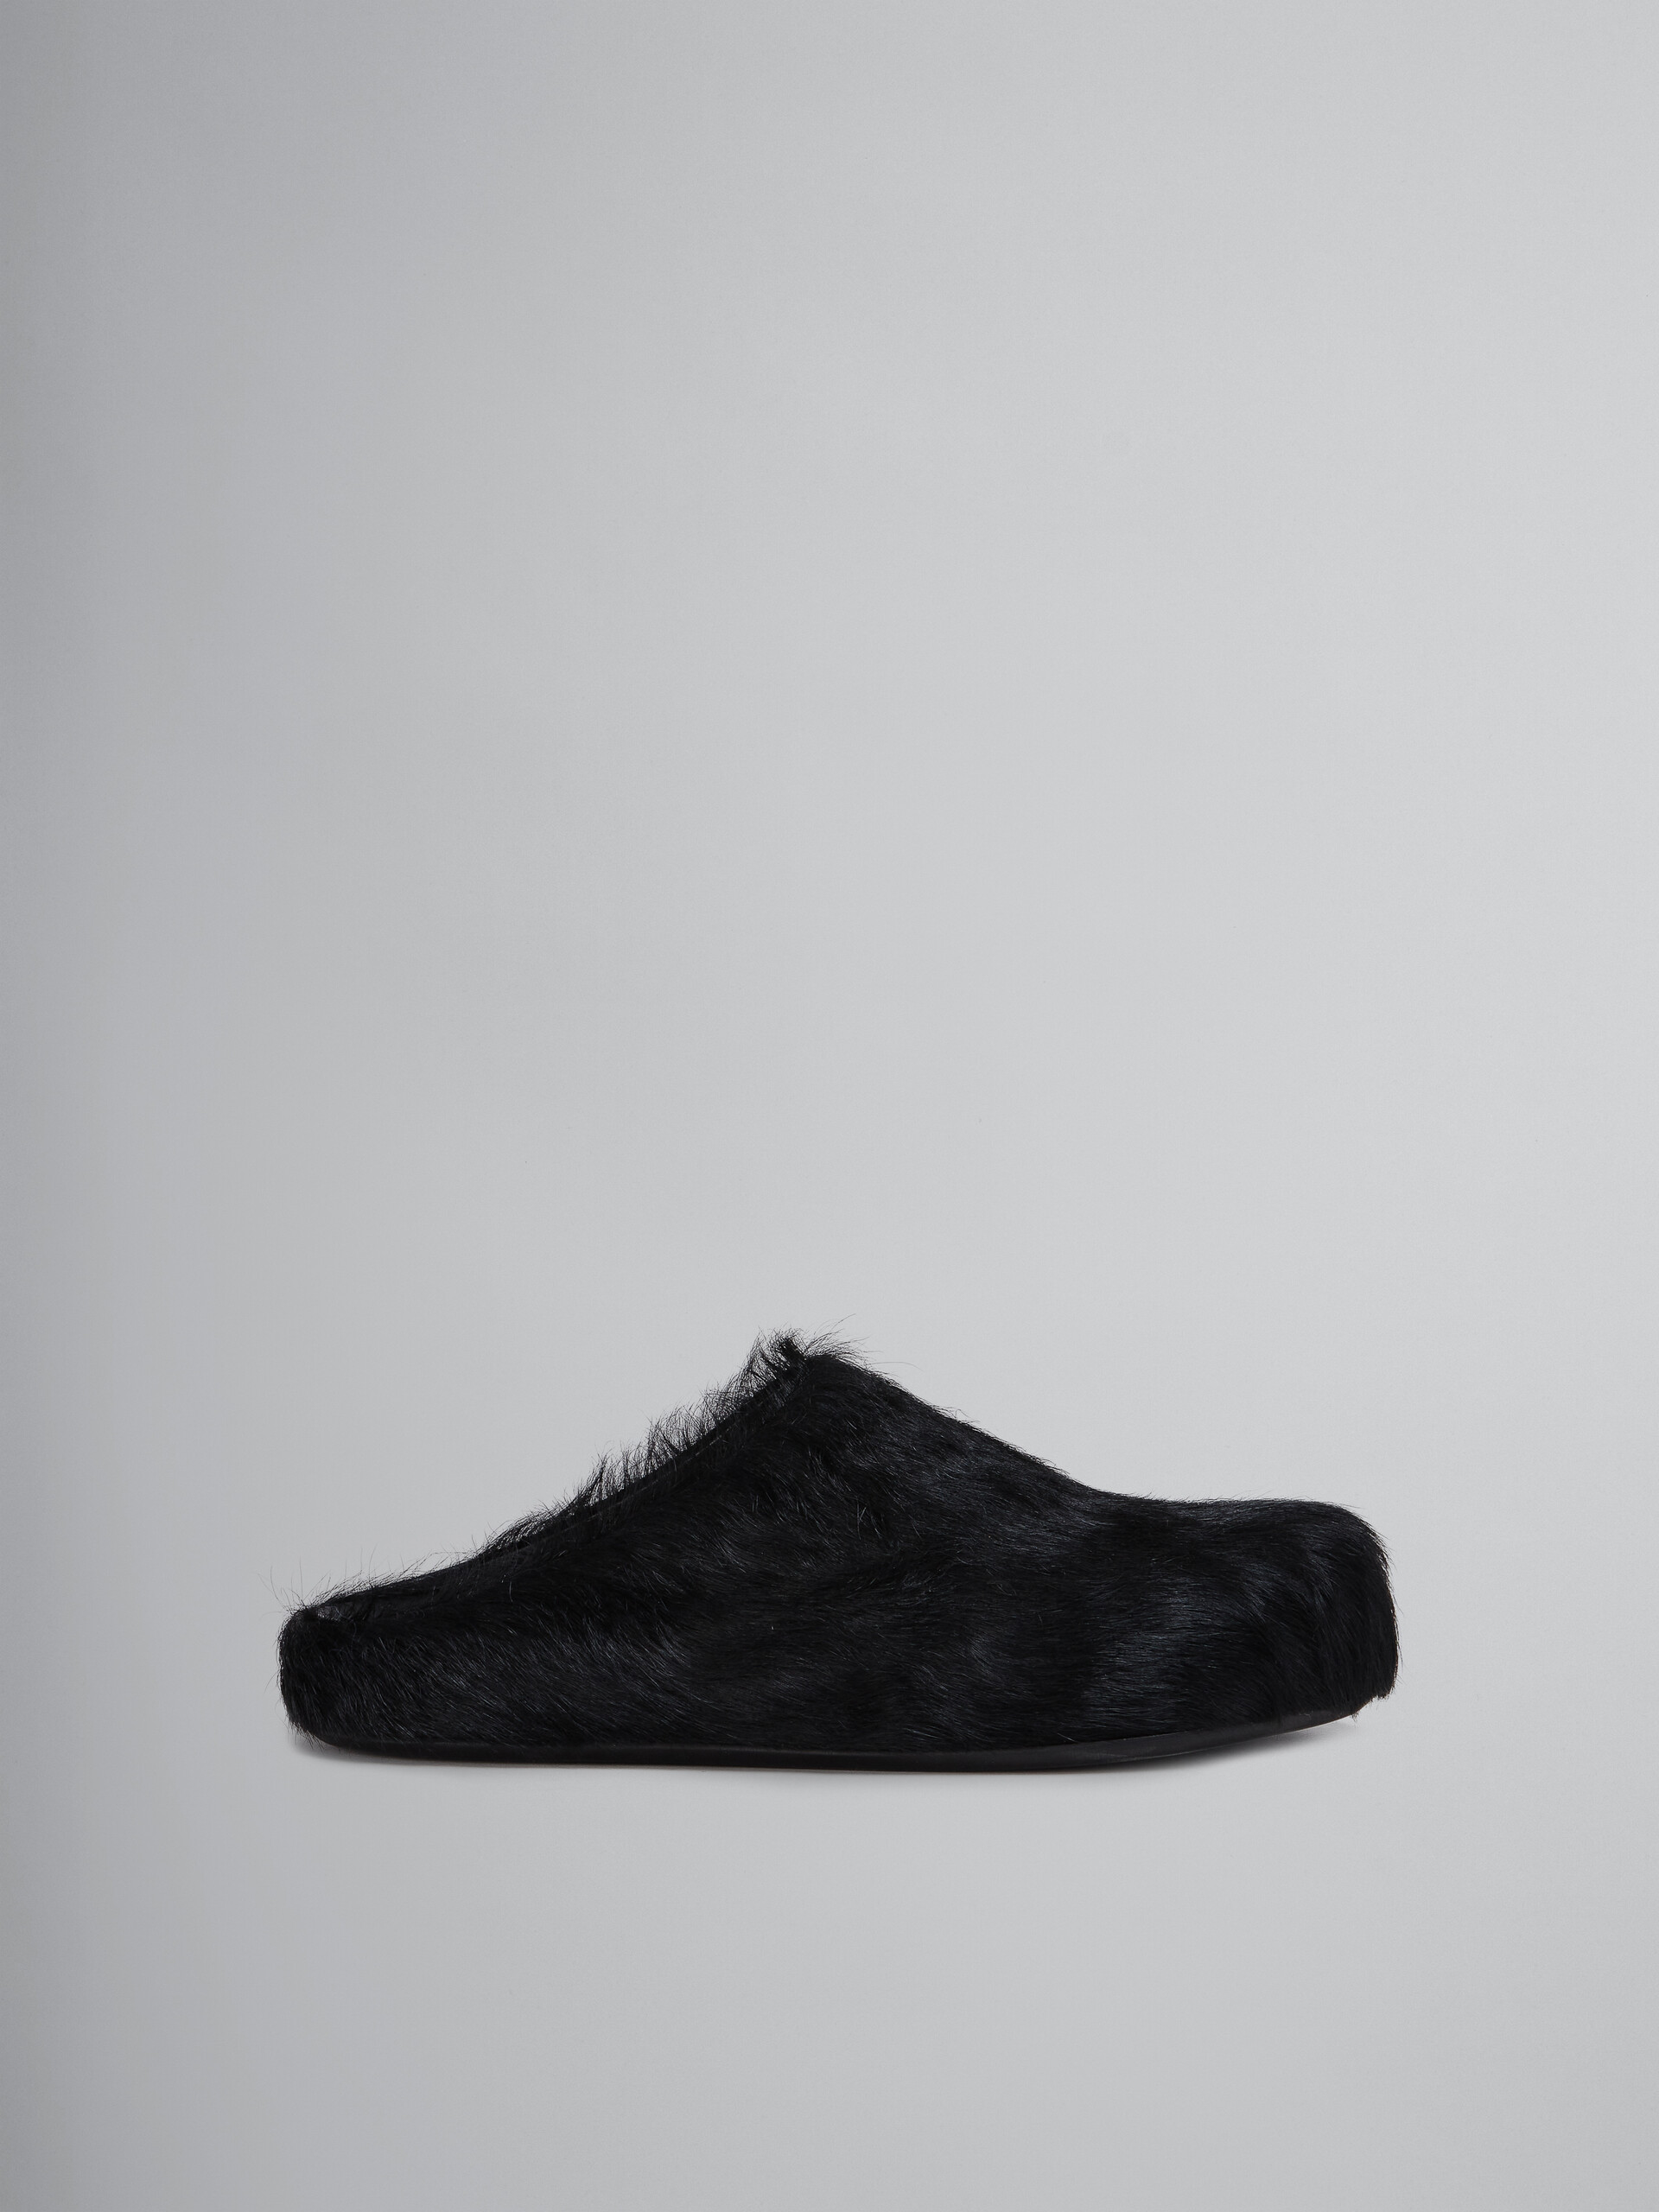 Black long-haired calfskin Fussbett sabot - Clogs - Image 1